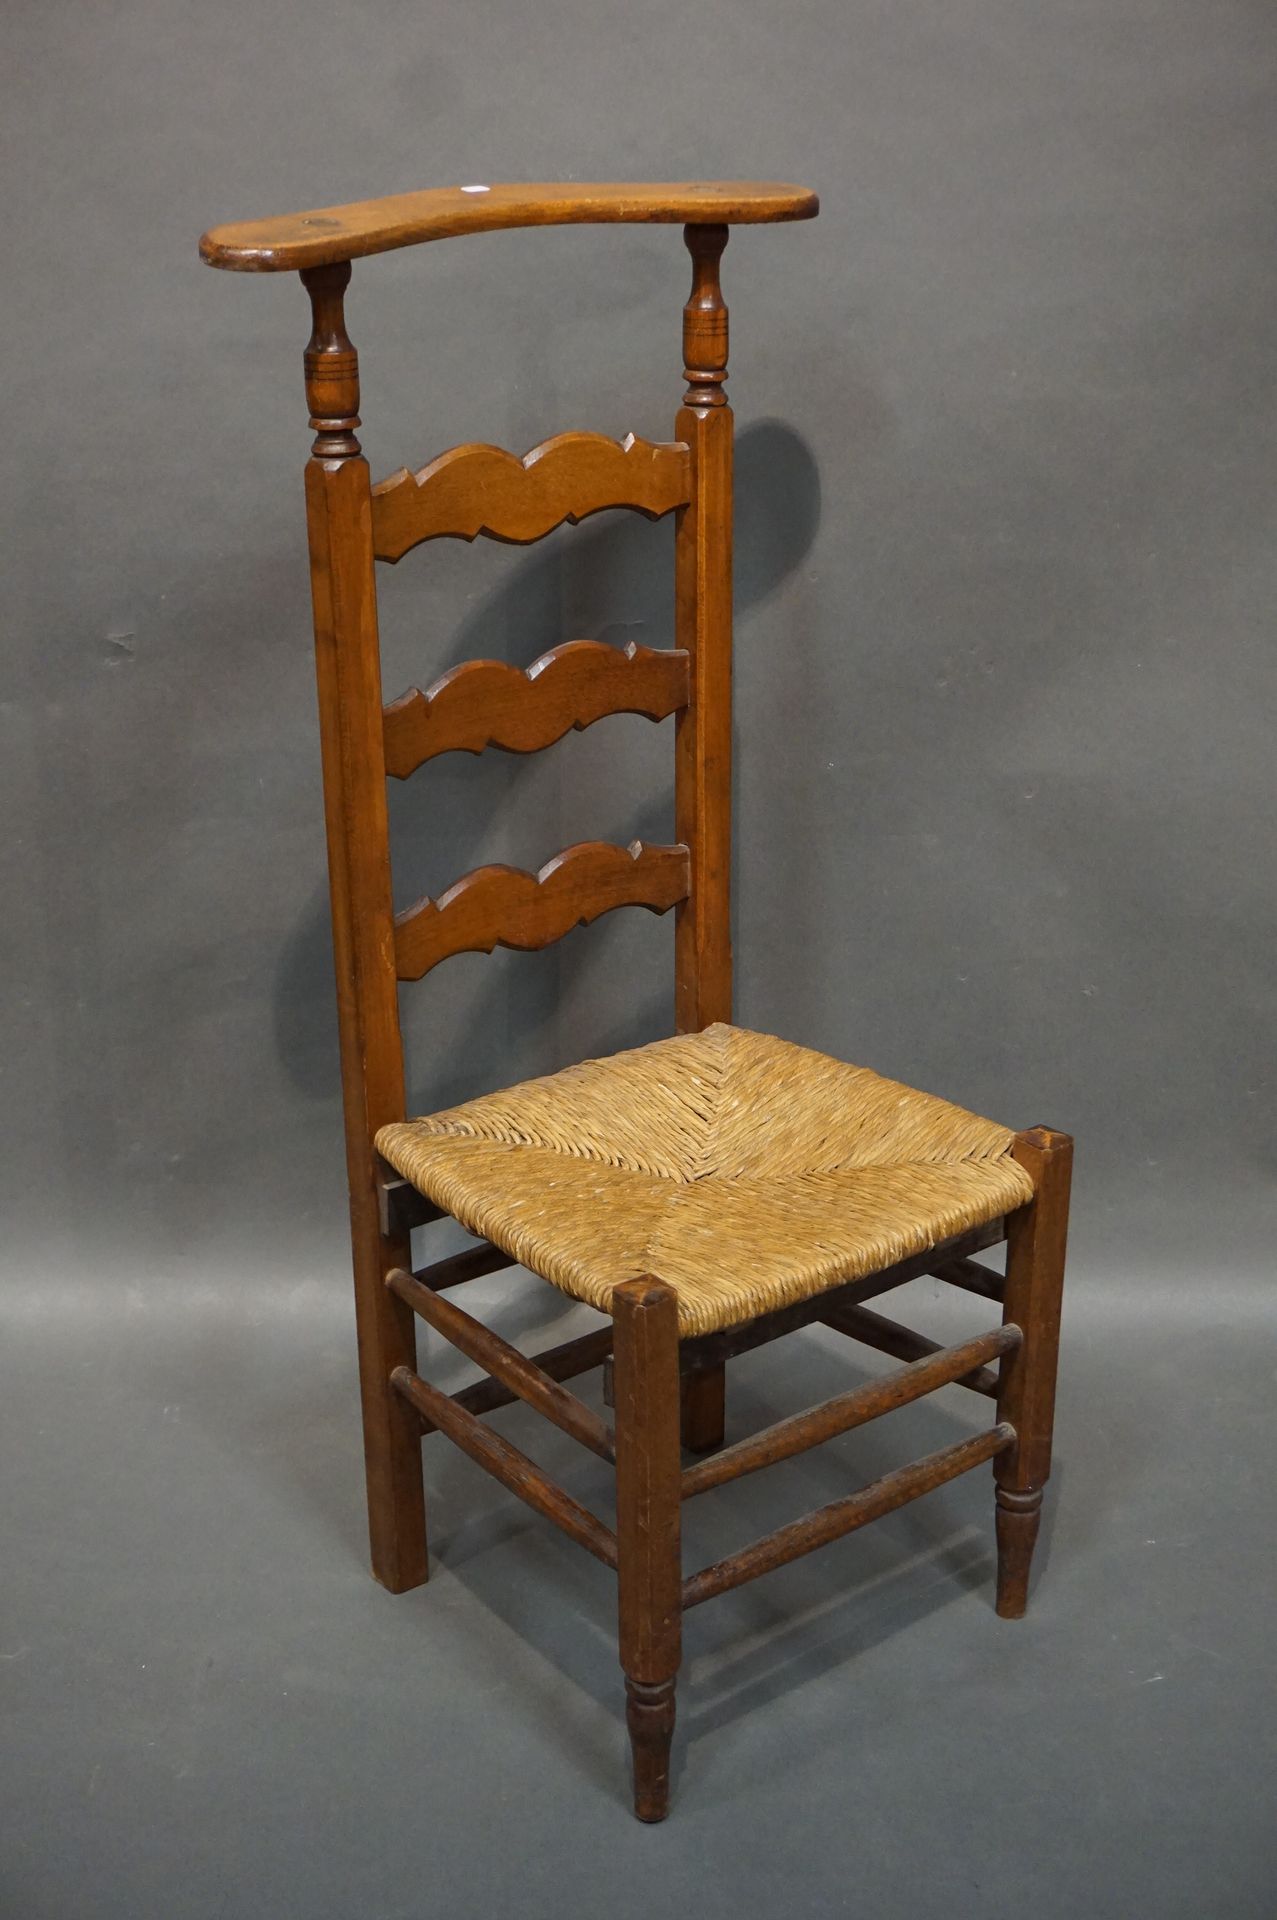 Null Stuhl prie-dieu aus natürlichem Holz, mit Stroh gefüllt. 101x48x40 cm